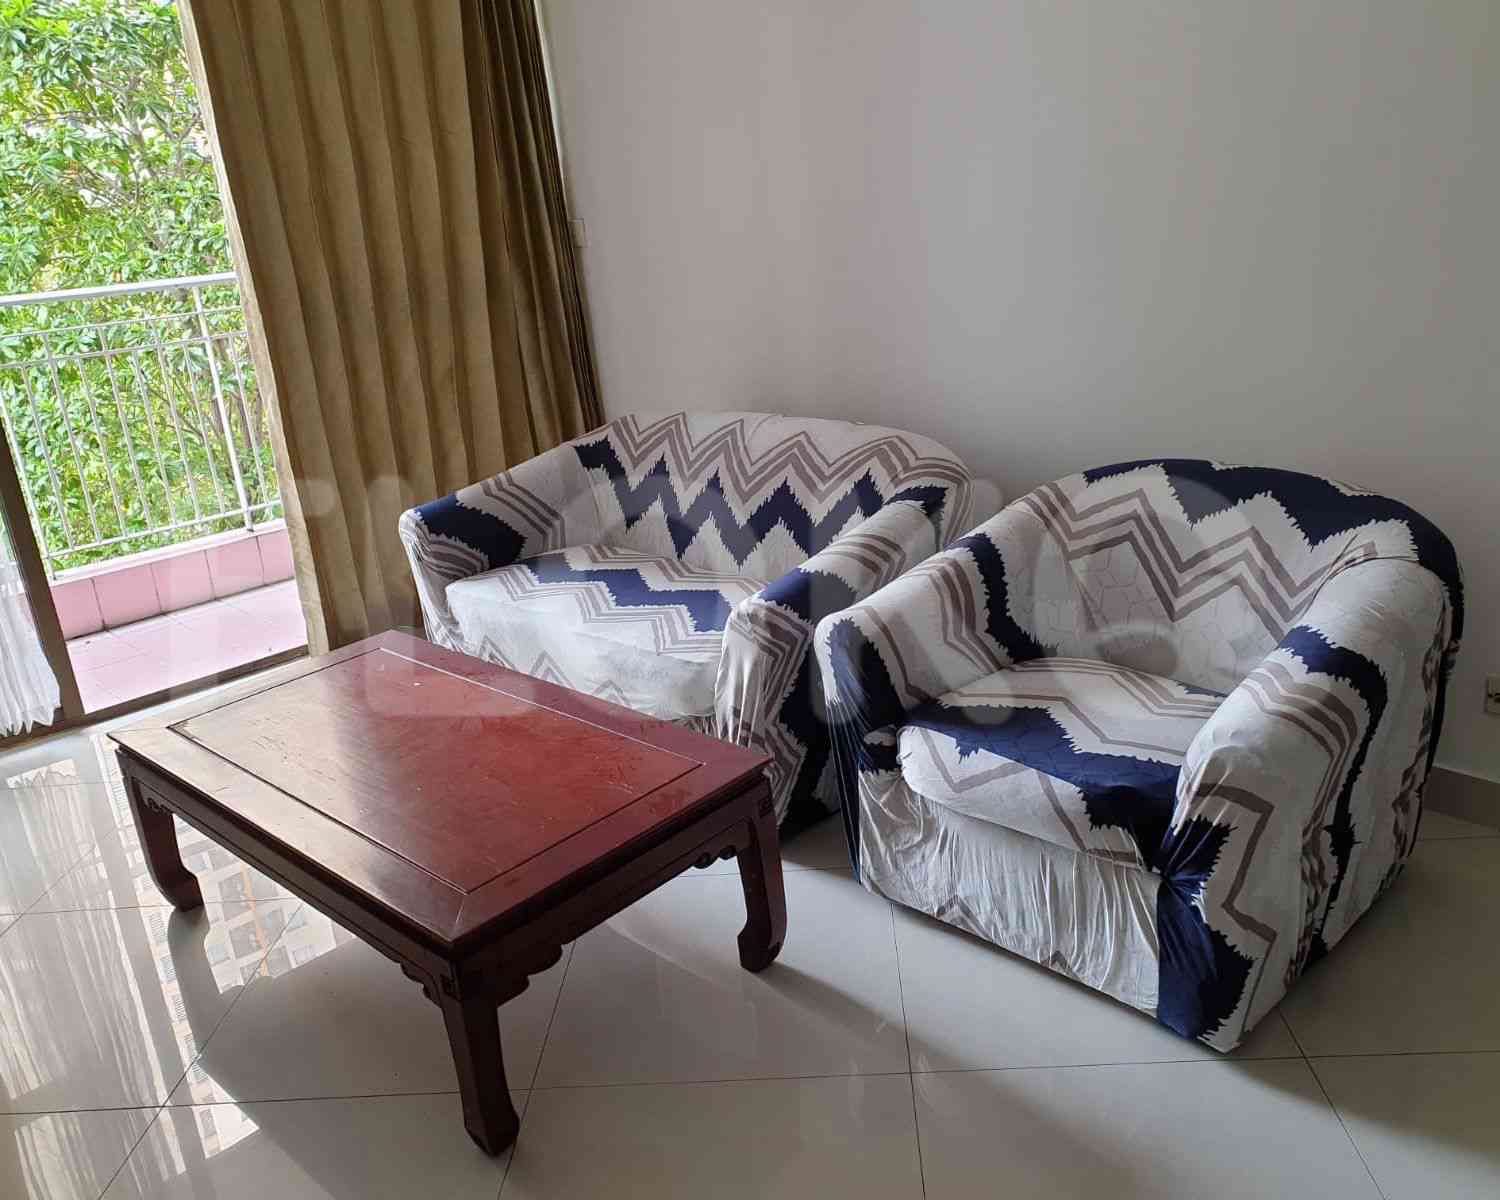 3 Bedroom on 7th Floor for Rent in Taman Rasuna Apartment - fkudaa 1